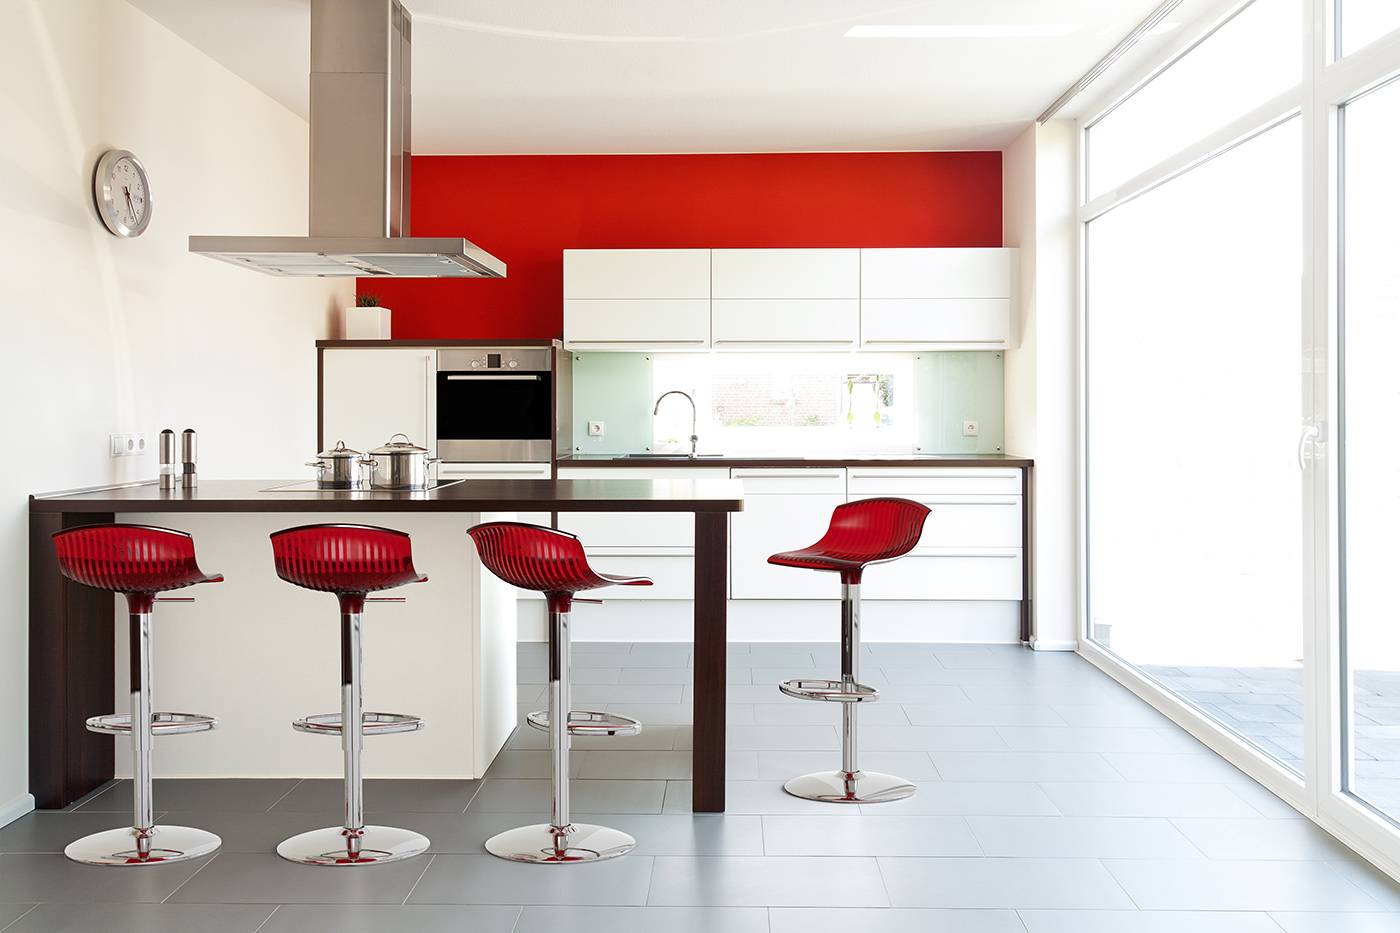 Барные стулья на кухне: тренд или вульгарность? | онлайн-журнал о ремонте и дизайне